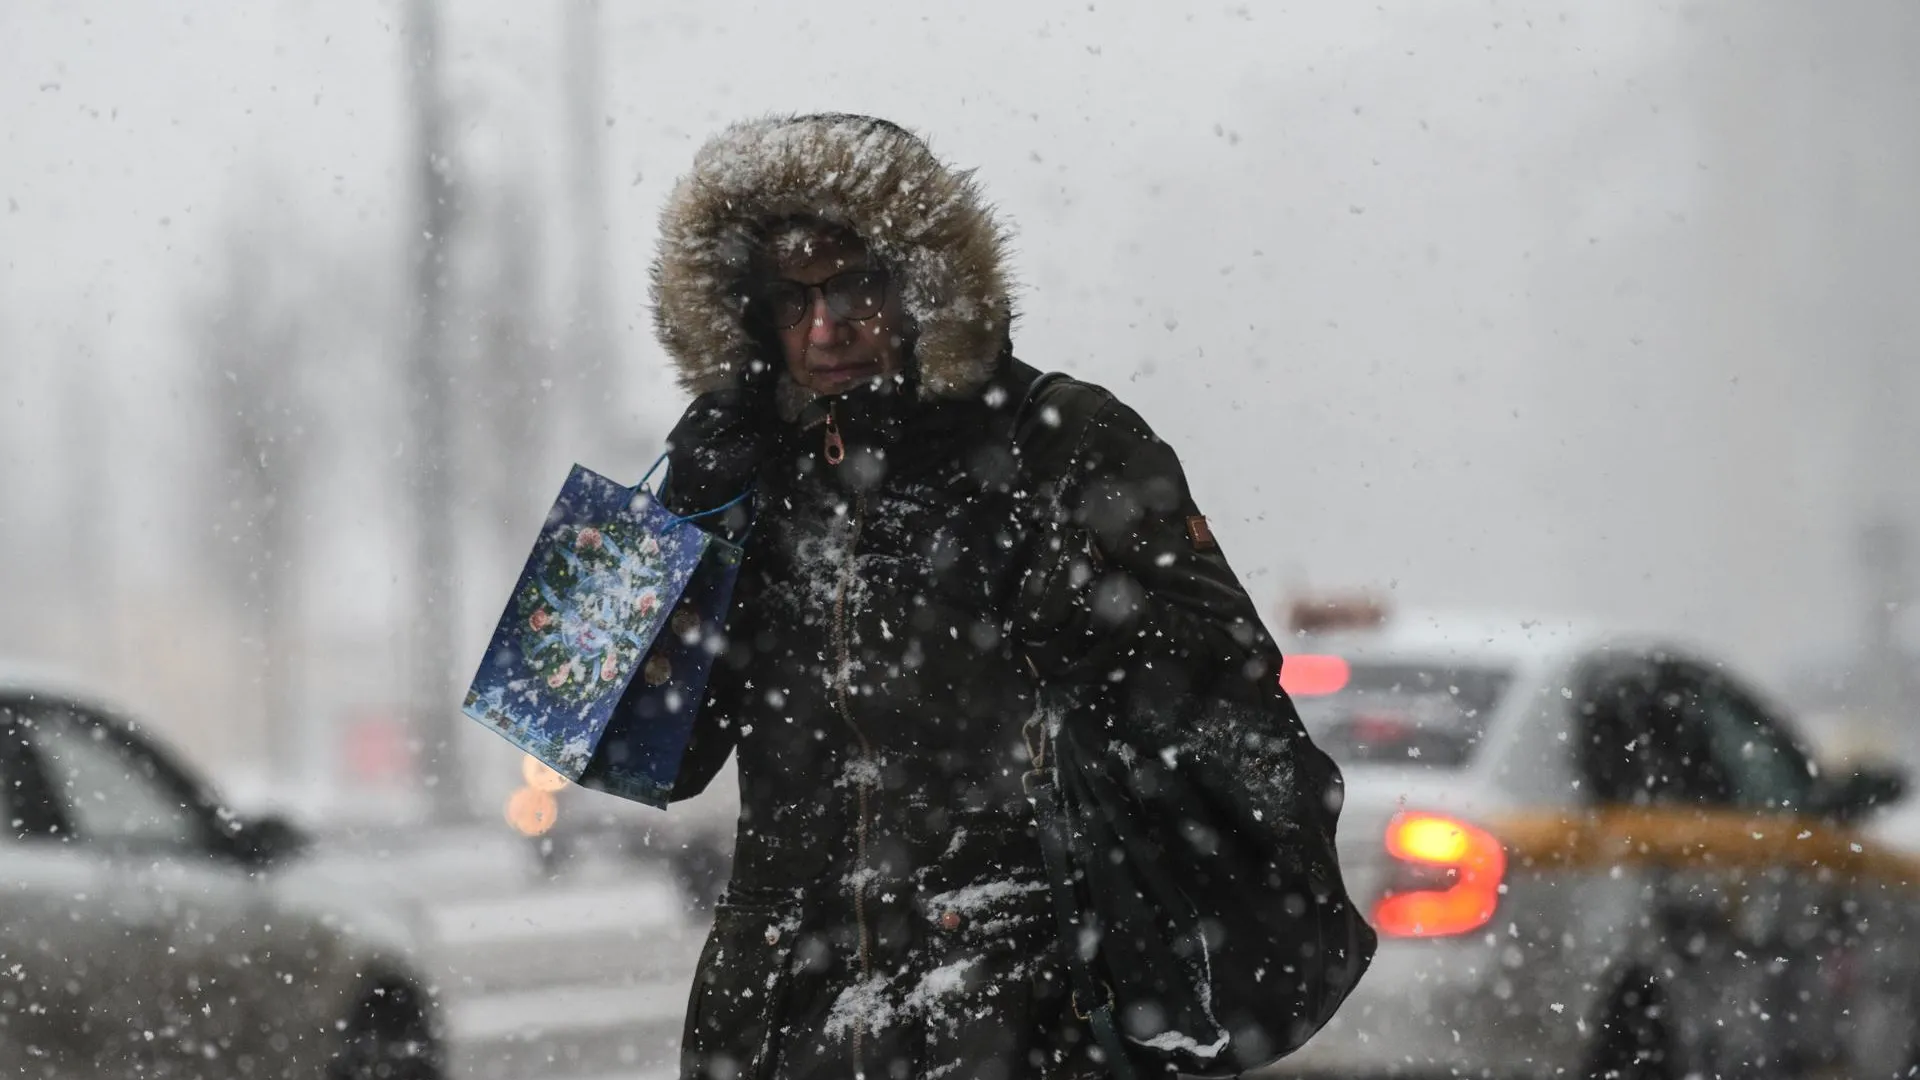 Рекордный снегопад с метелью обрушится на Москву 15 декабря